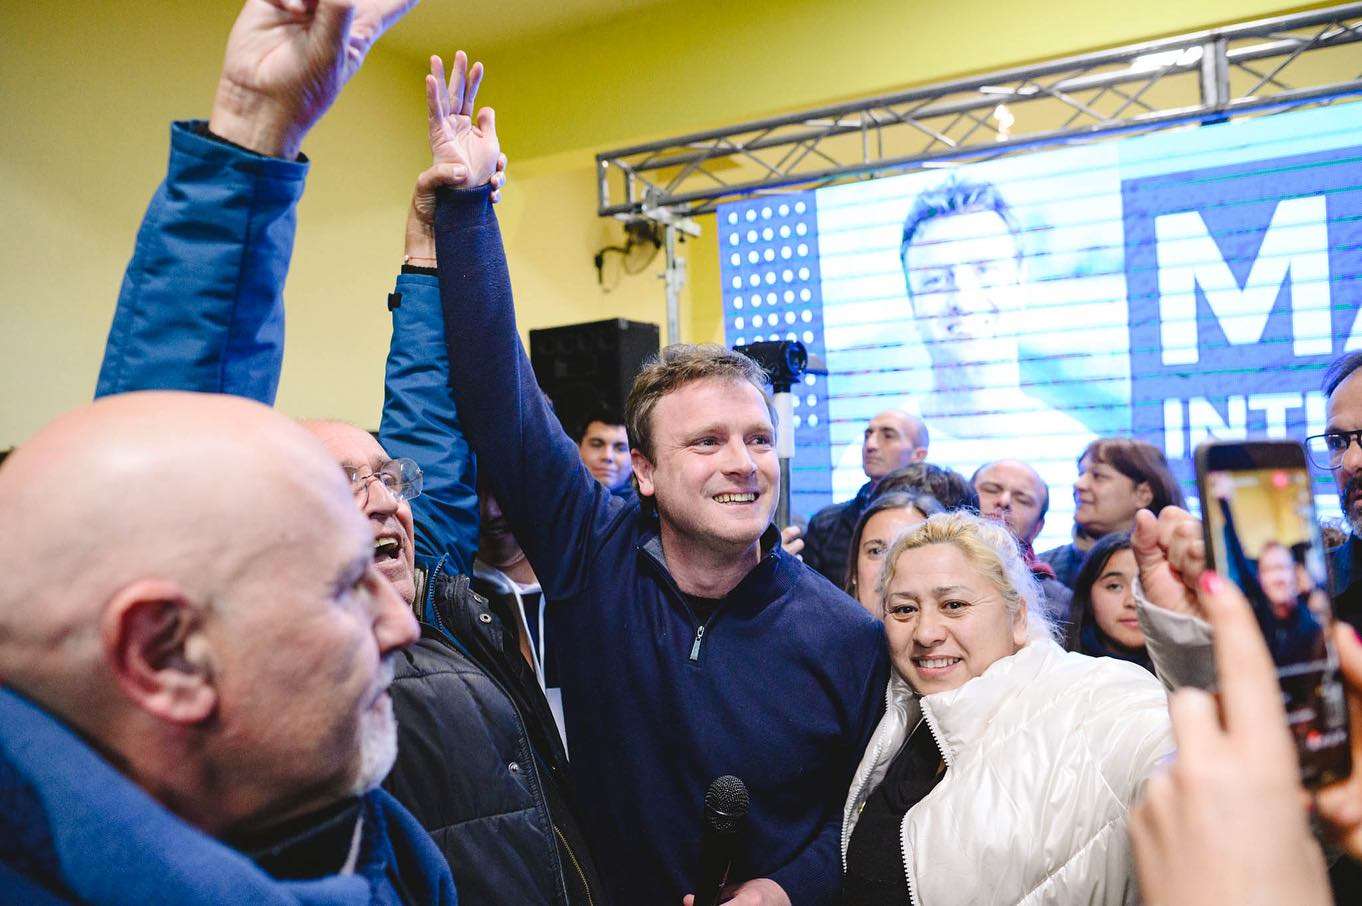 Elecciones PASO 2023 en Olavarría: "Vamos a hacer una excelente elección en octubre", se ilusiona el peronista Wesner